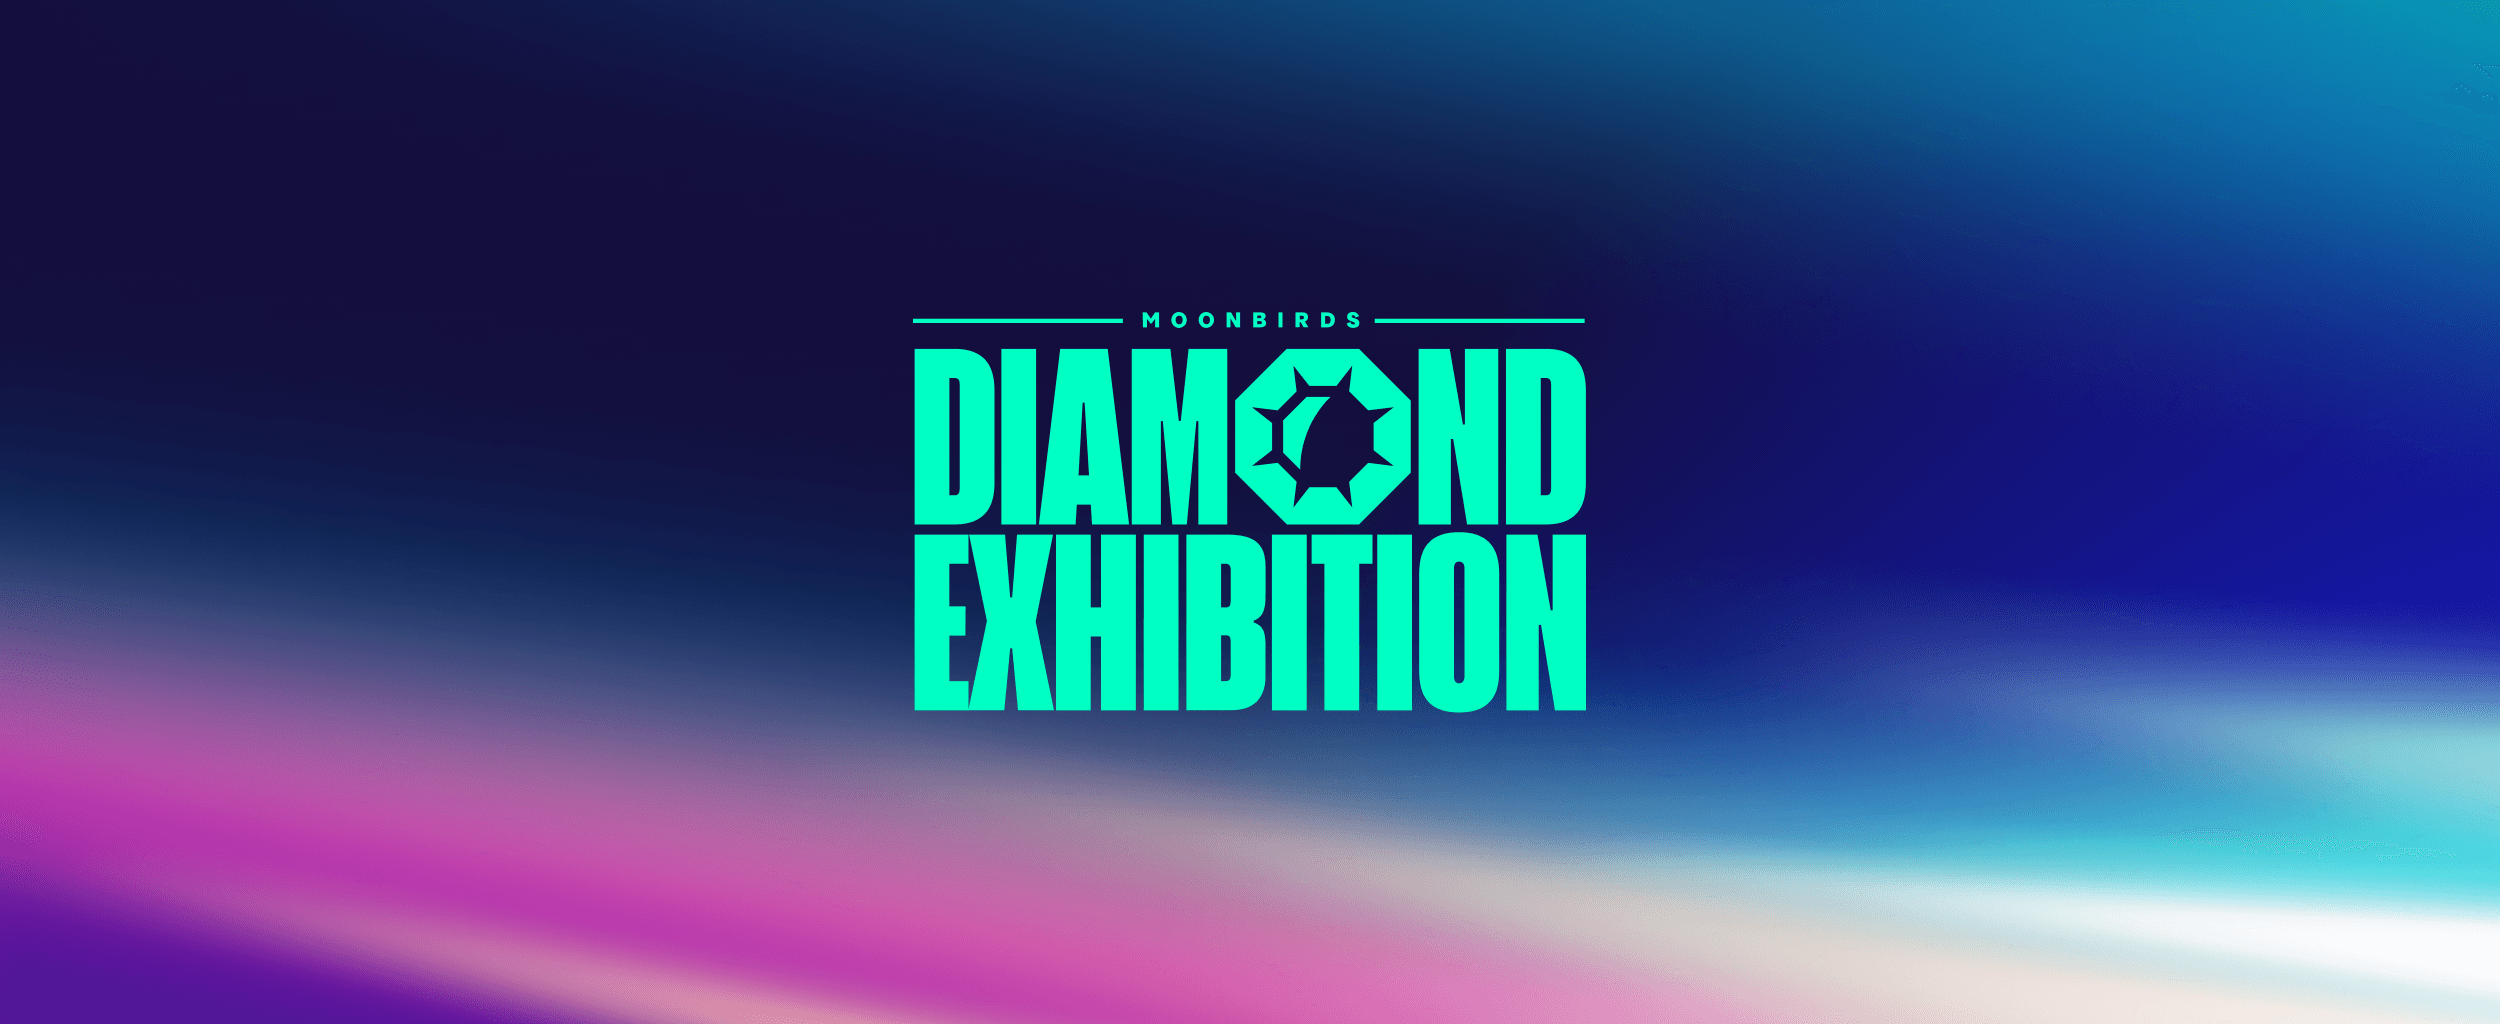 Diamond Exhibition